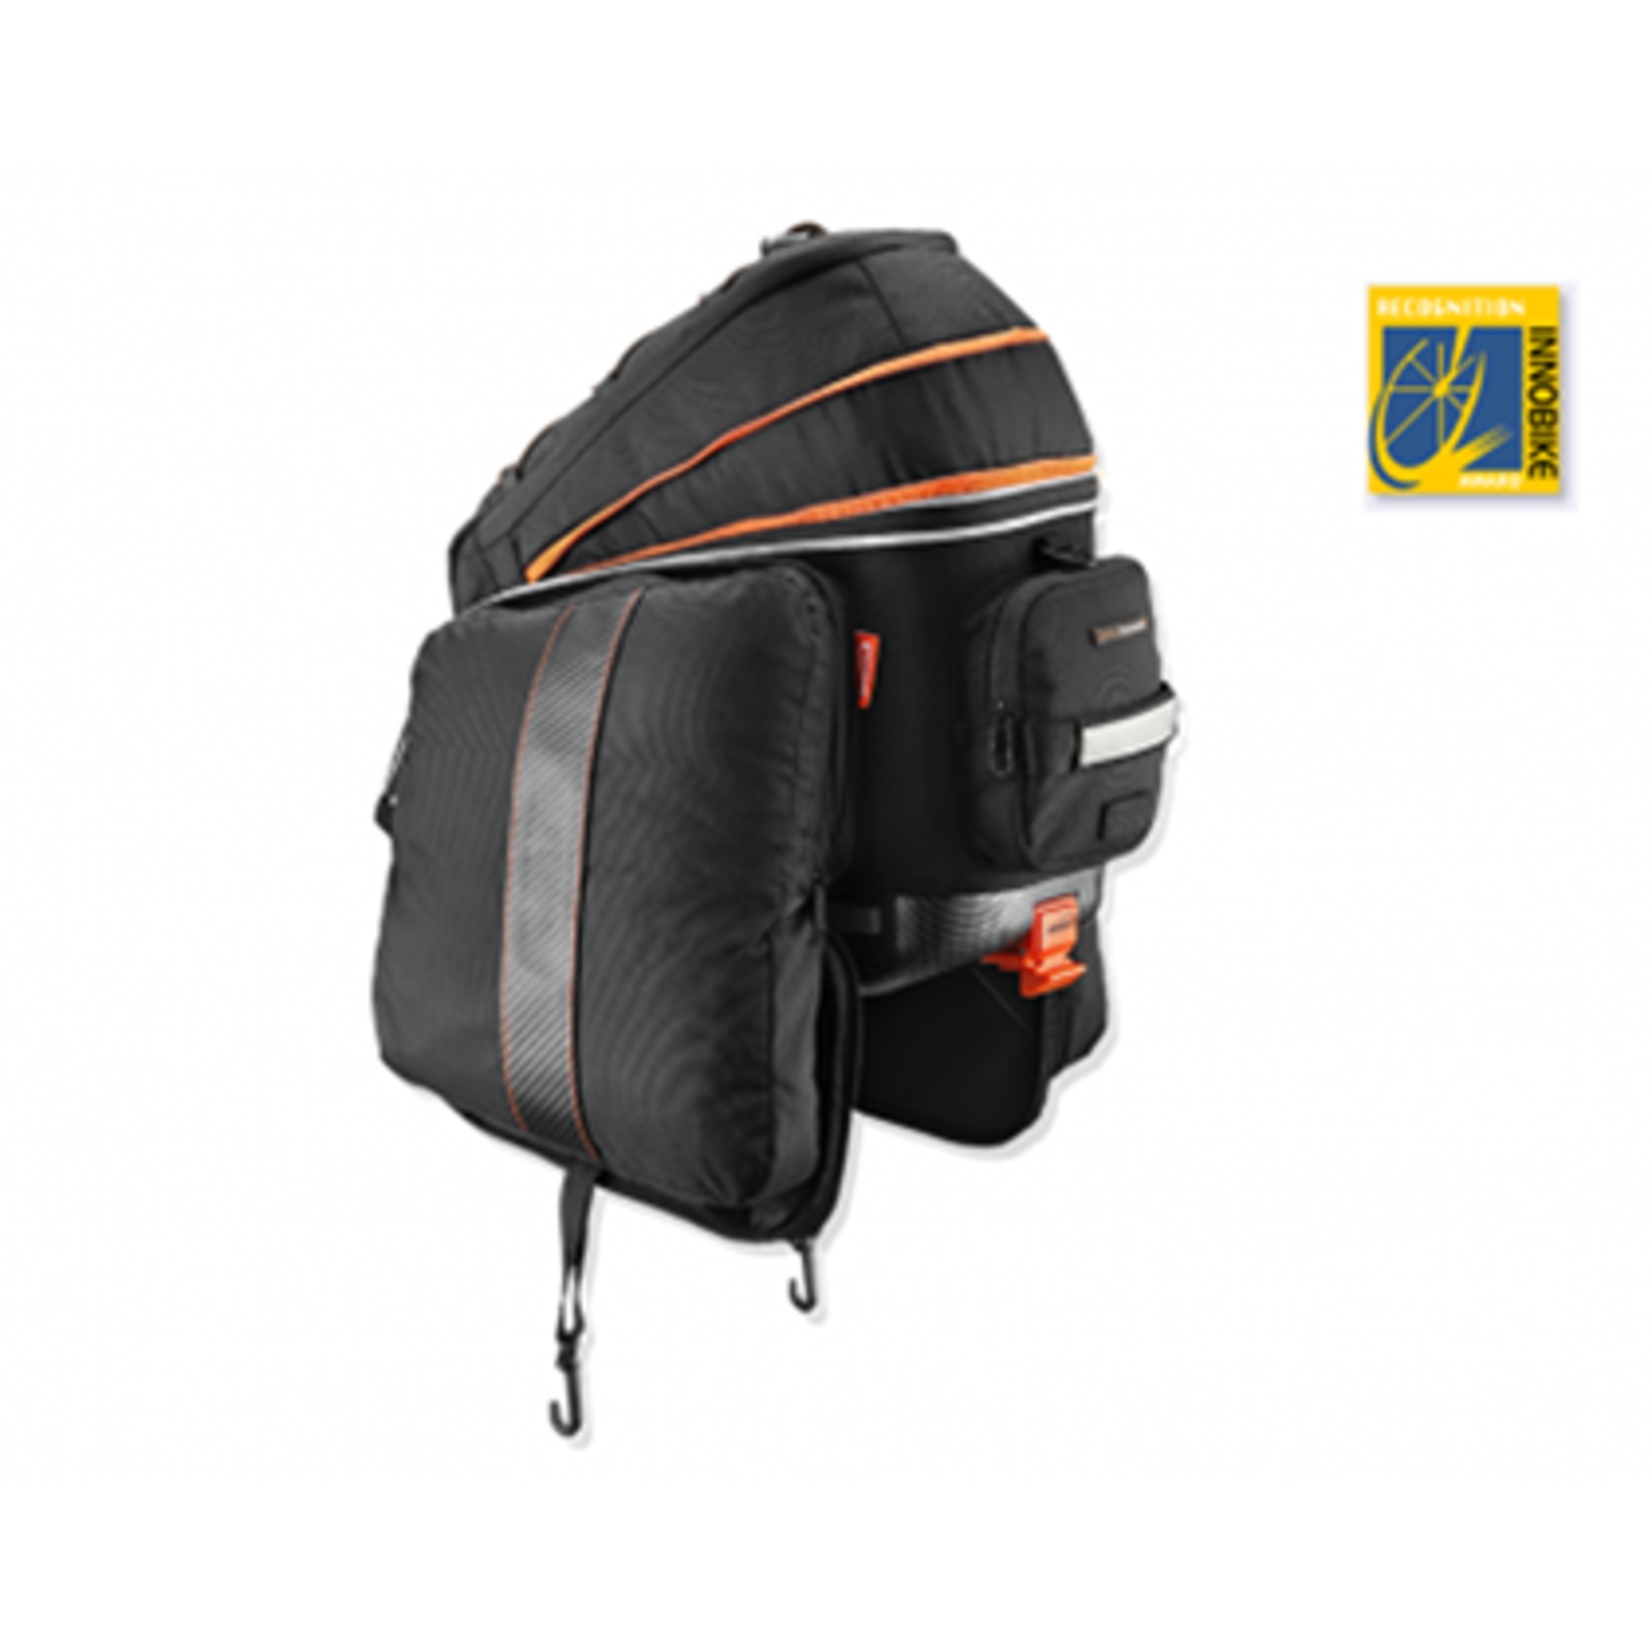 Pannier Premium Bag - Pak Rak Expandable Clip-On Bag With Fold Down Panniers For Racks